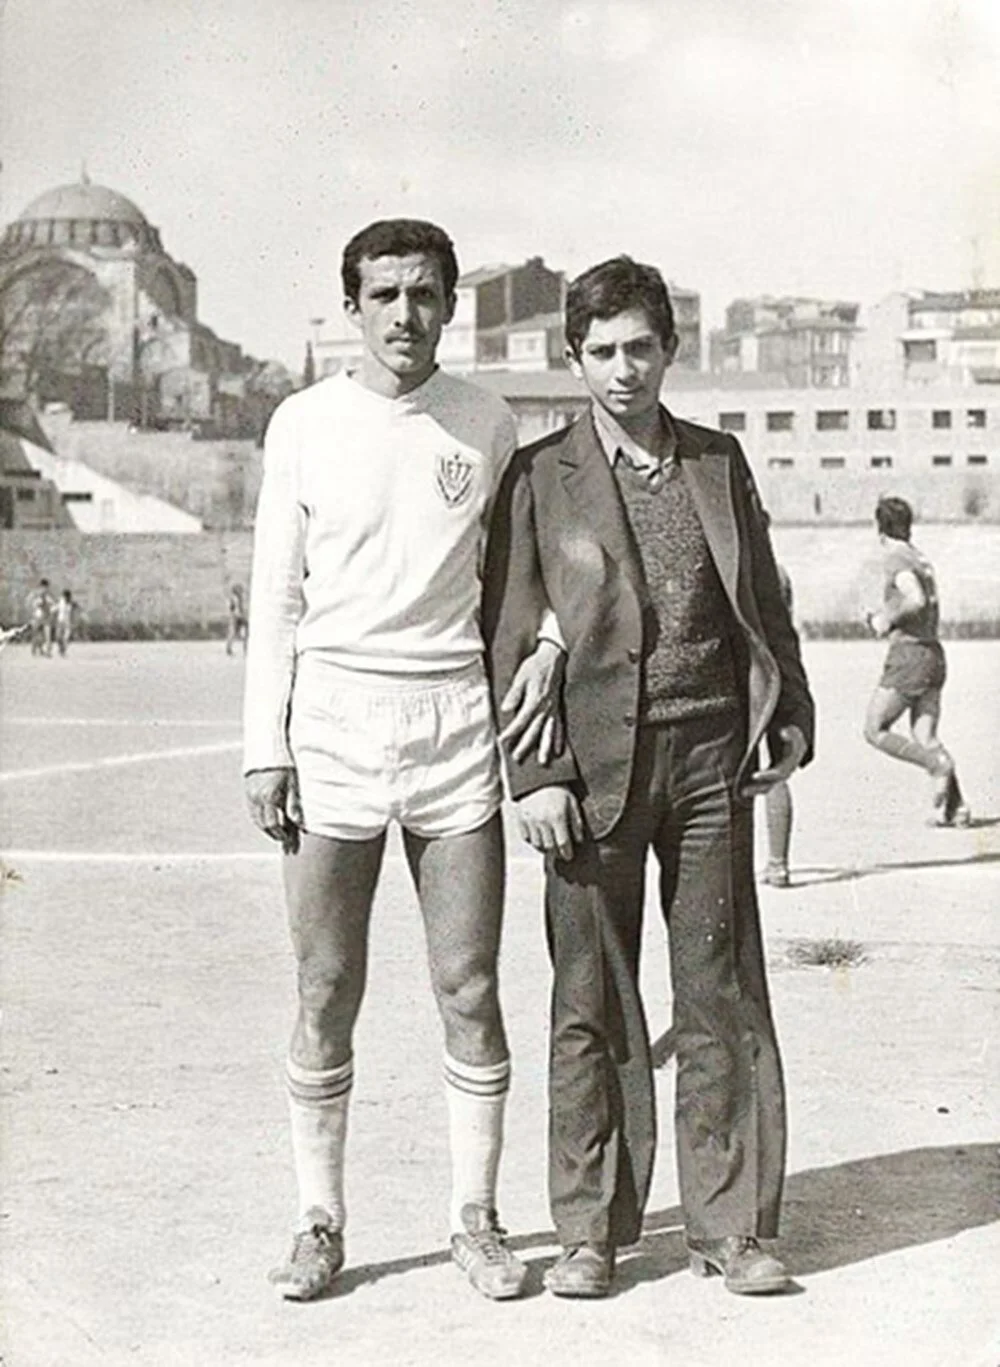 Futbolu çok seven Erdoğan, 1969-1982 yılları arasında futbol oynadı. Lise ve üniversitede dönemlerinde Milli Türk Talebe Birliği Öğrenci Kollarında aktif olan Erdoğan, Koyu bir Fenerbahçe taraftarı.